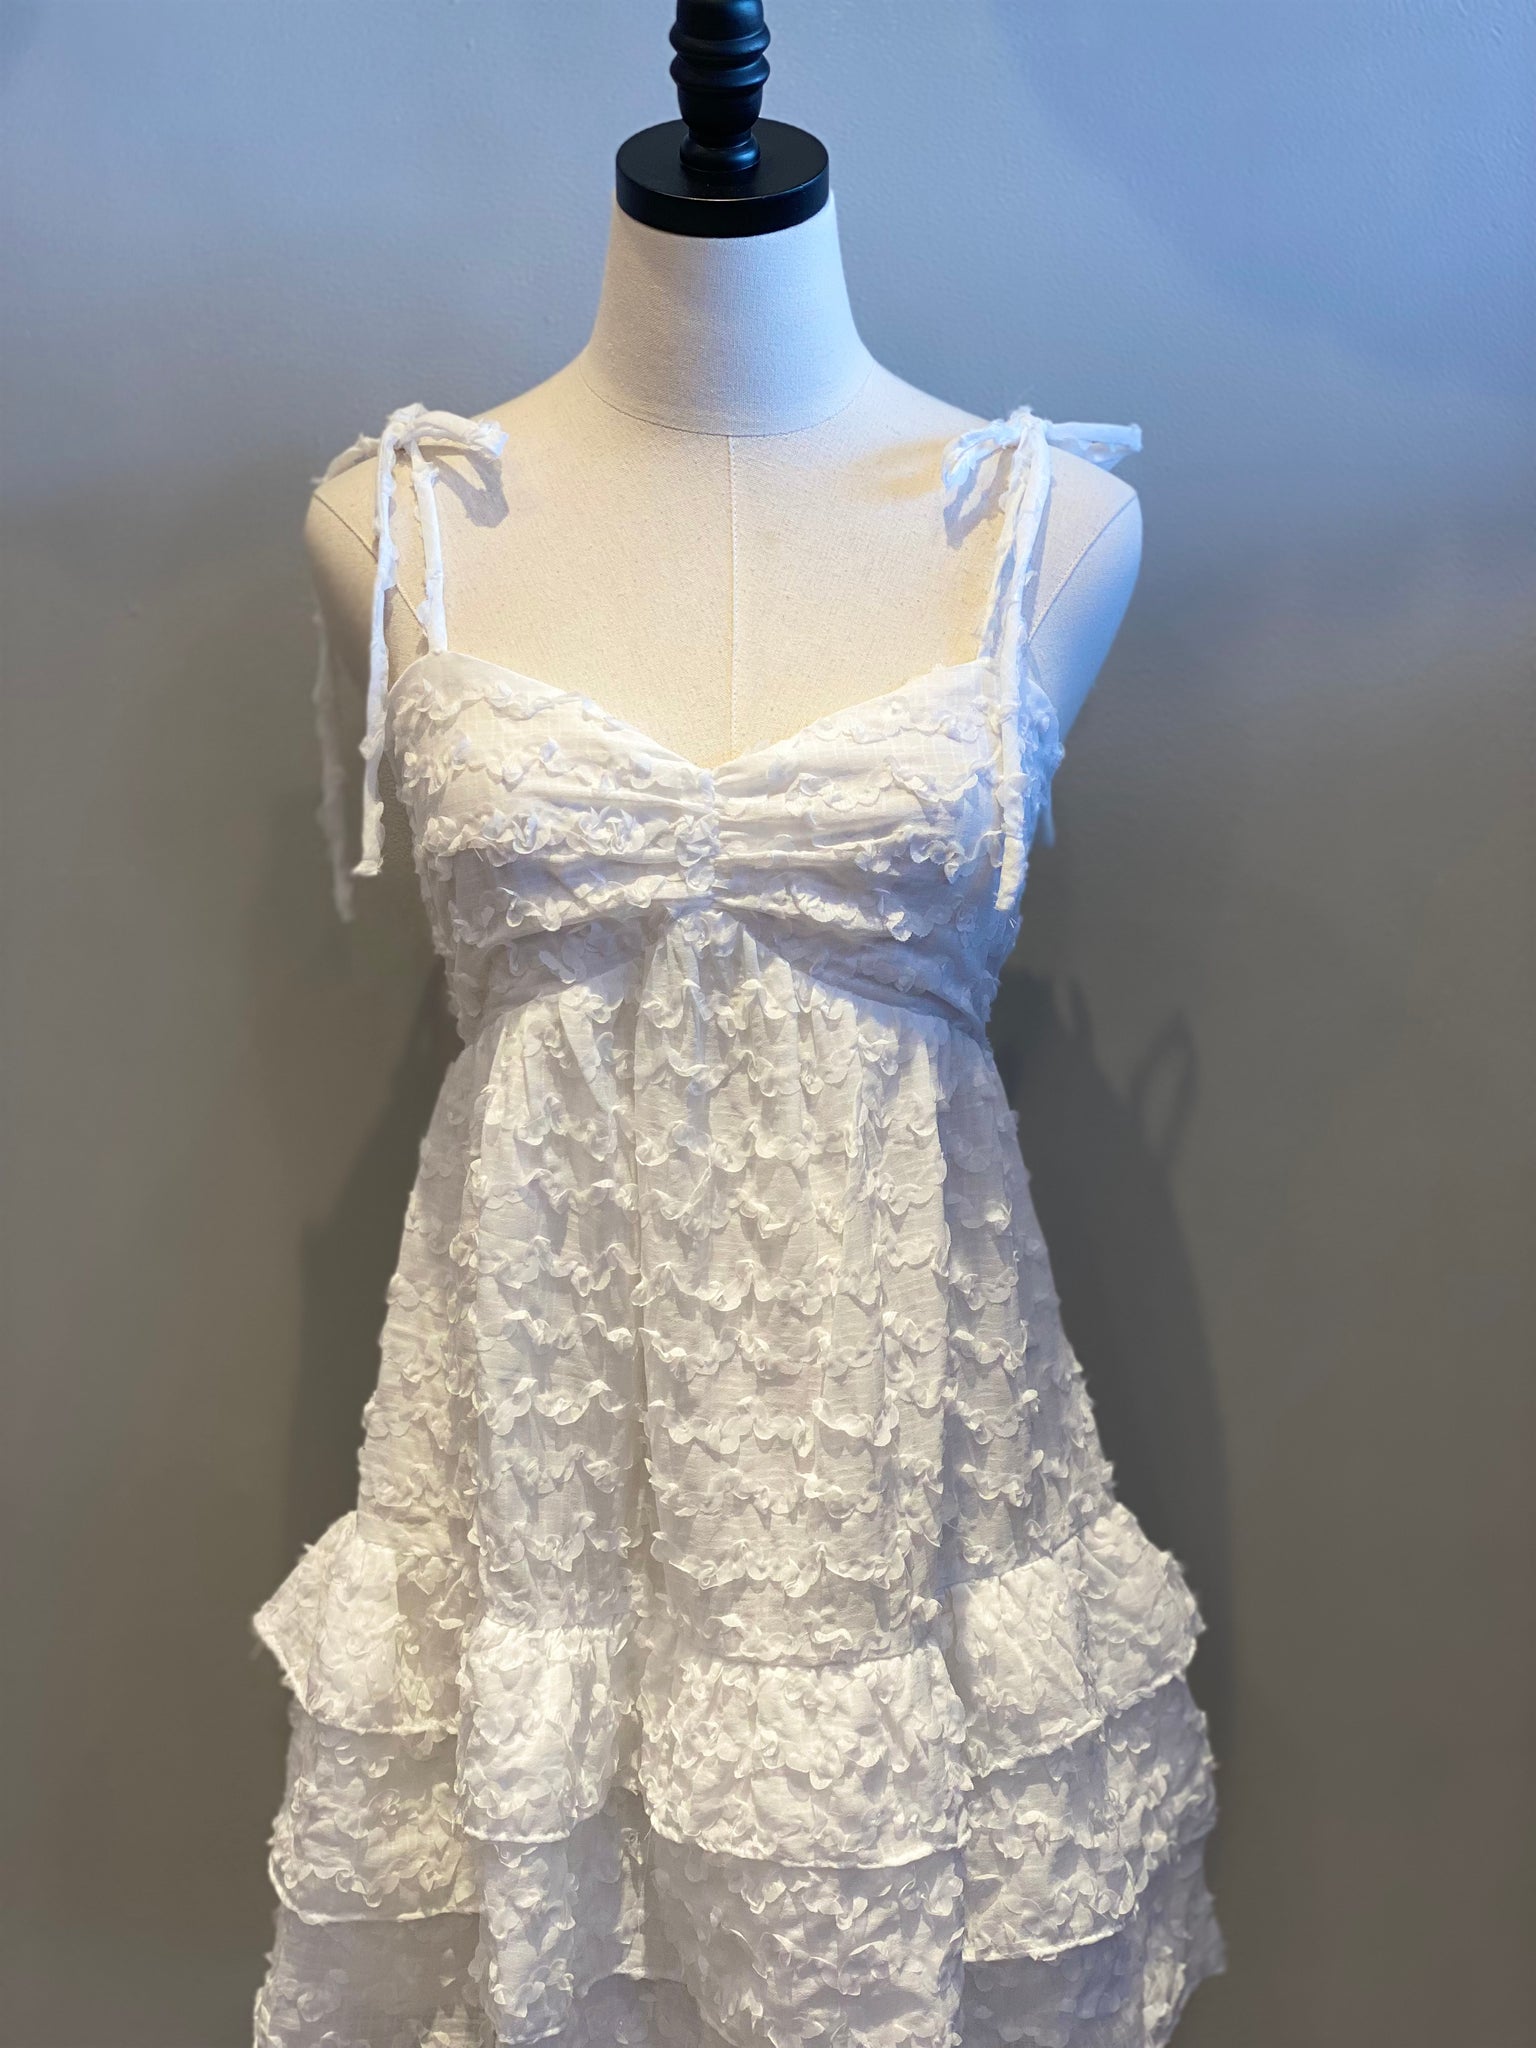 Textured Ruffle Dress